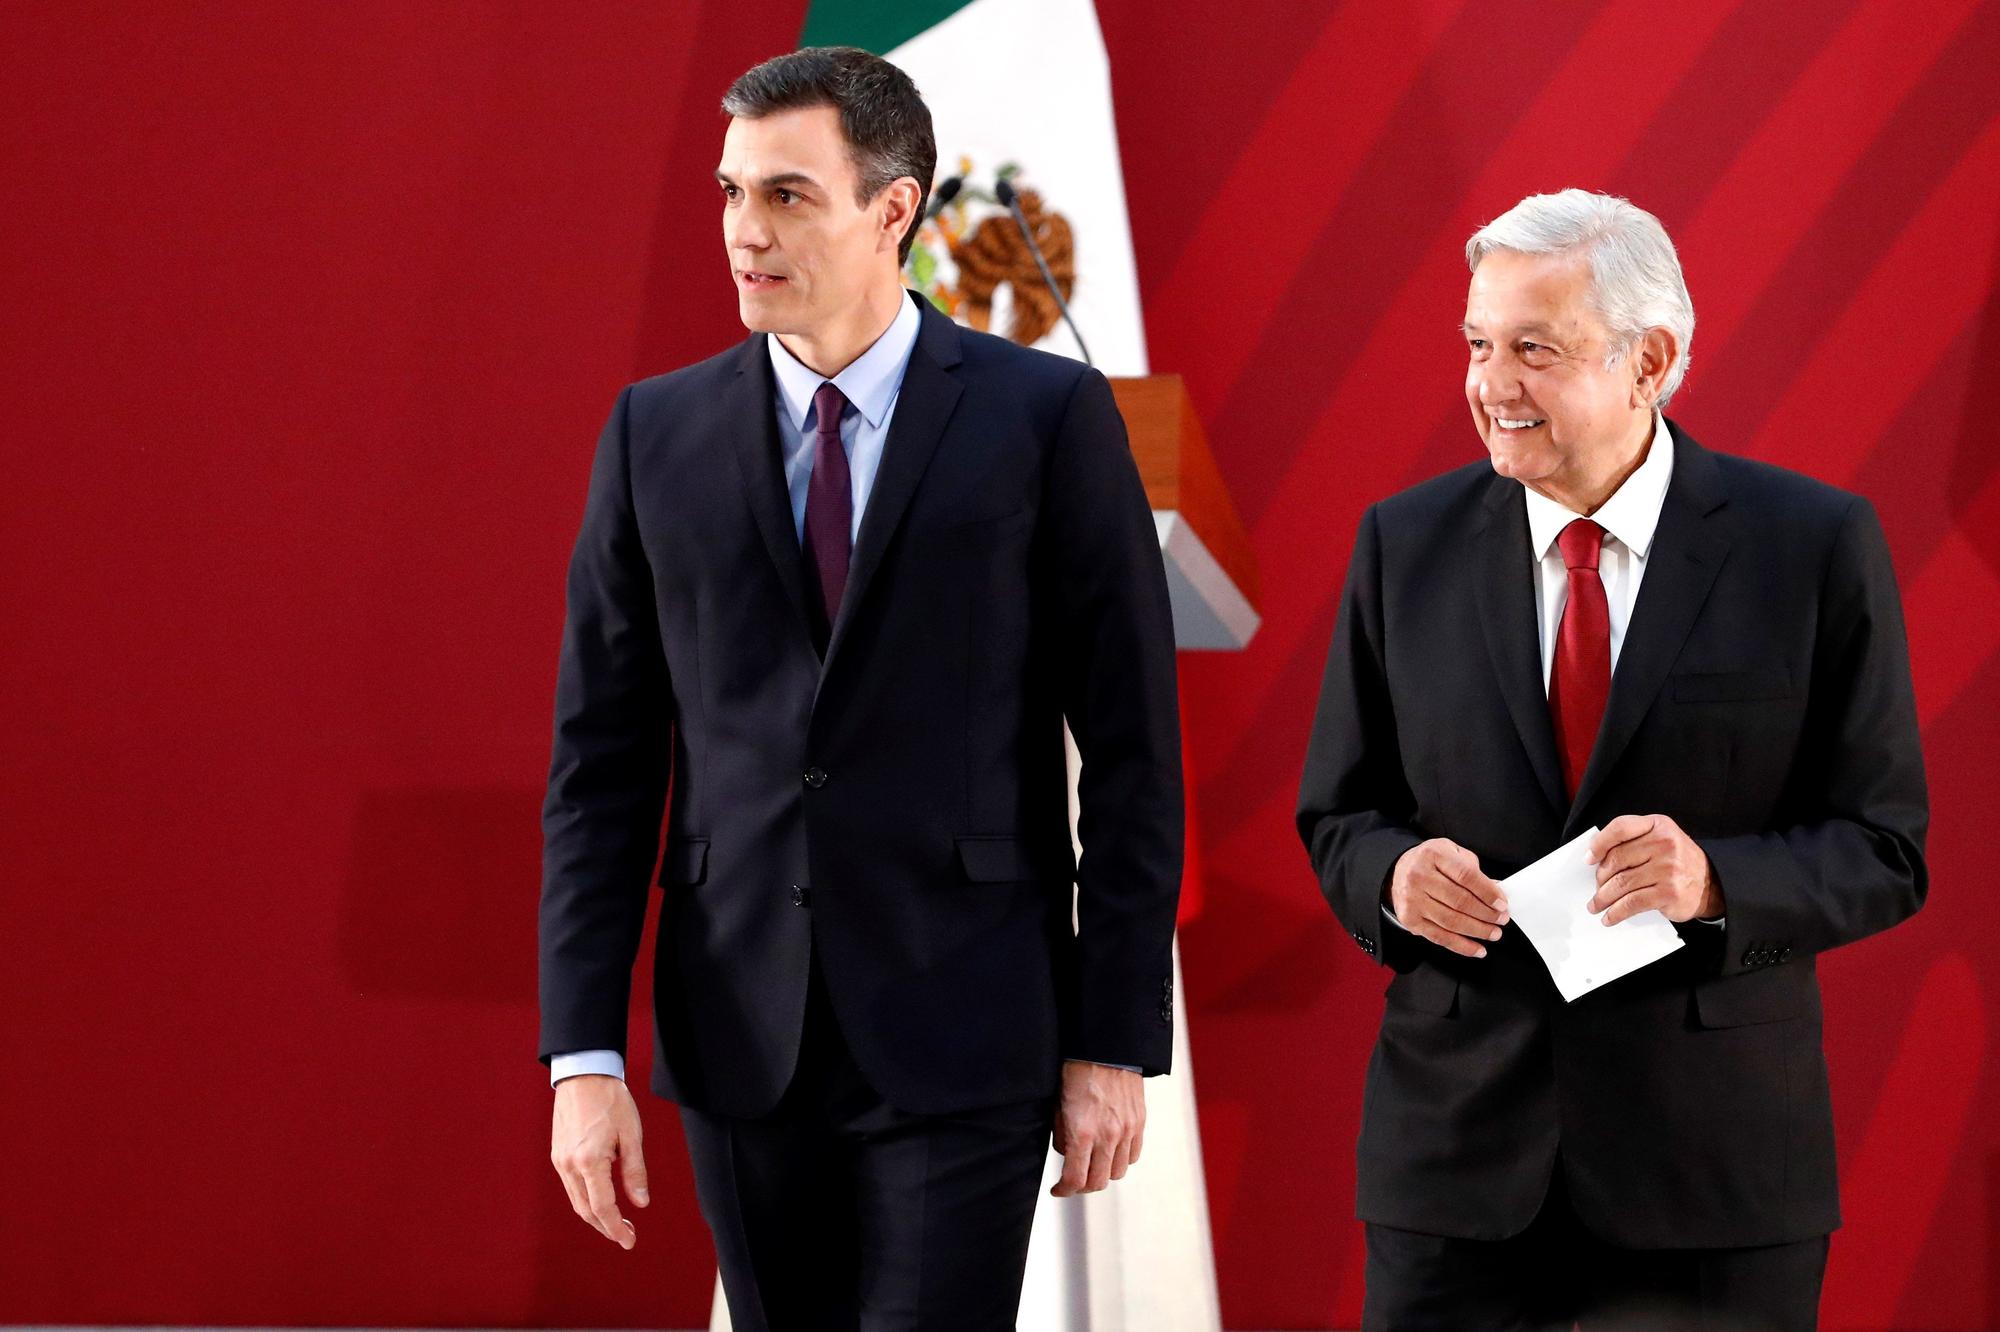 El presidente del Gobierno español, Pedro Sánchez, y el presidente de México, Andrés Manuel López Obrador, durante una rueda de prensa conjunta en enero de 2019 en Ciudad de México (México).